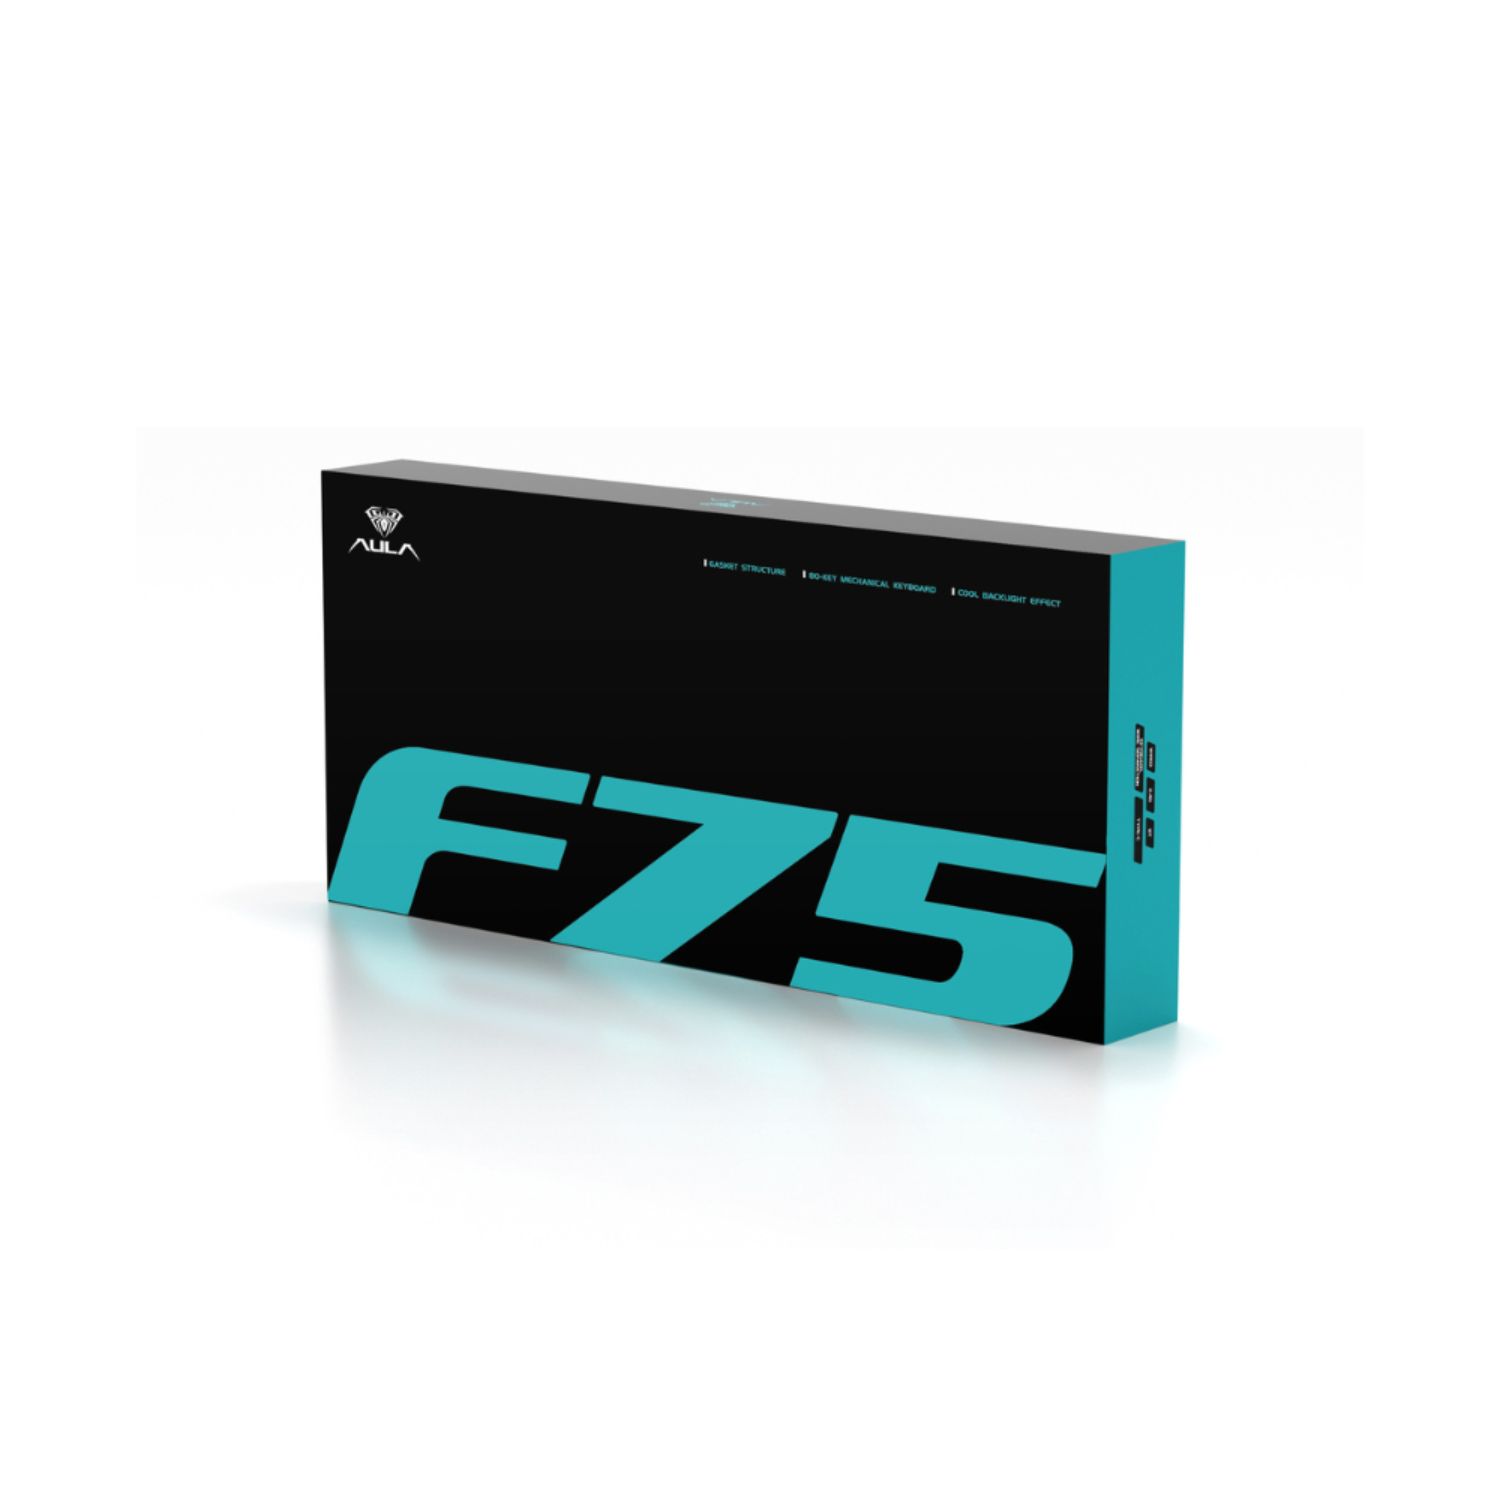 Bàn Phím Cơ AULA F75 có Hotswap, Led RGB, Kết Nối 3 Mode